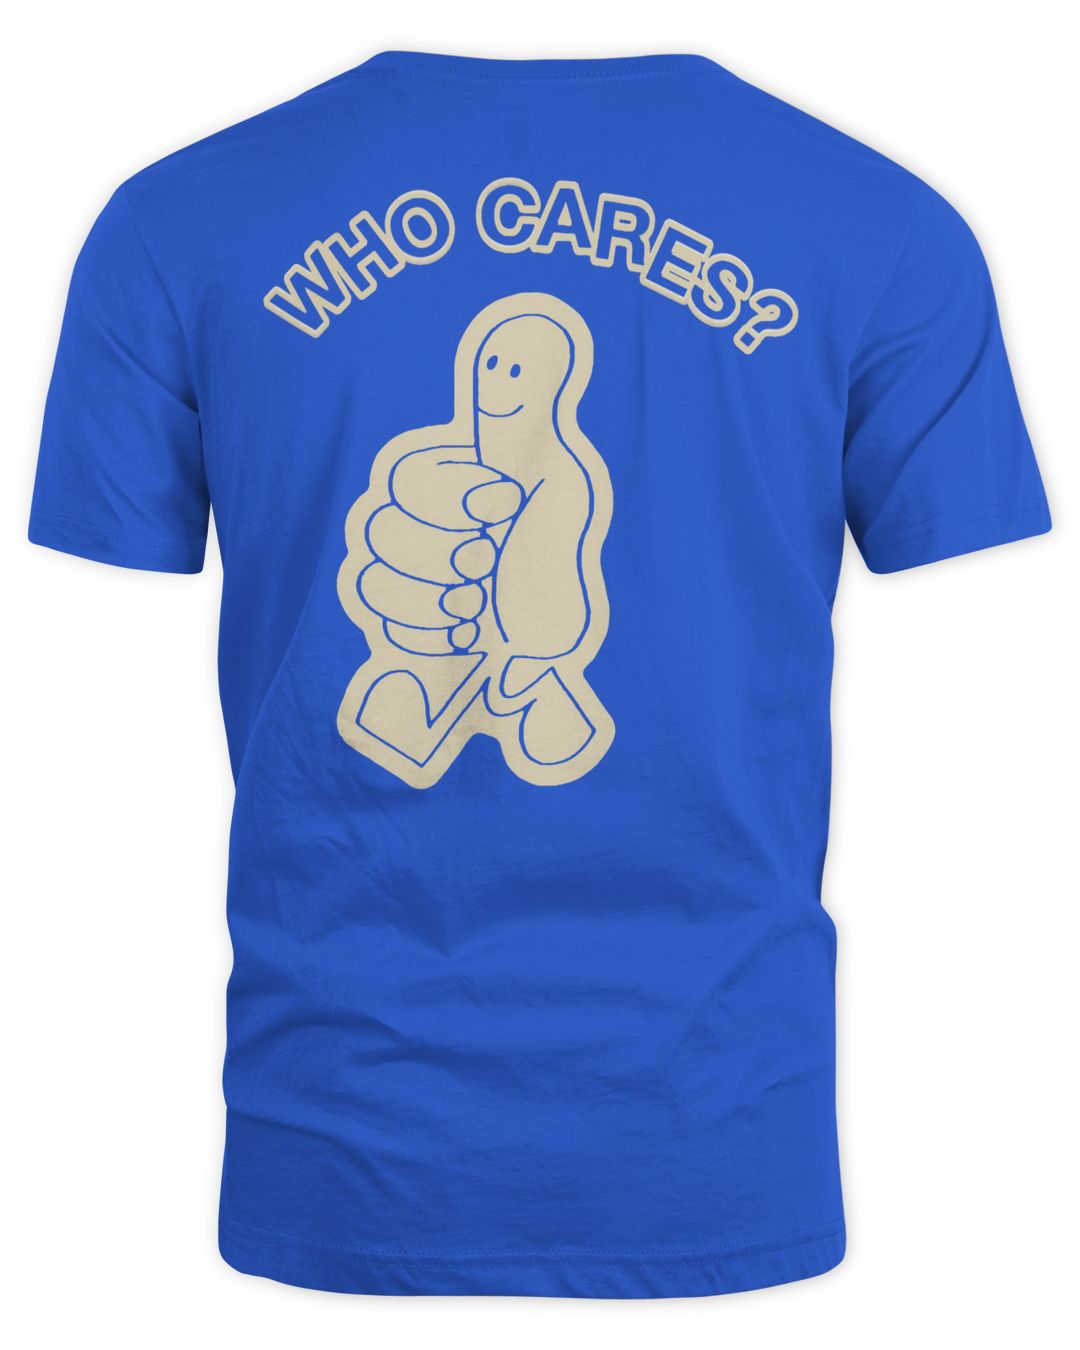 Who Cares Tour Merch Letterman Shirt